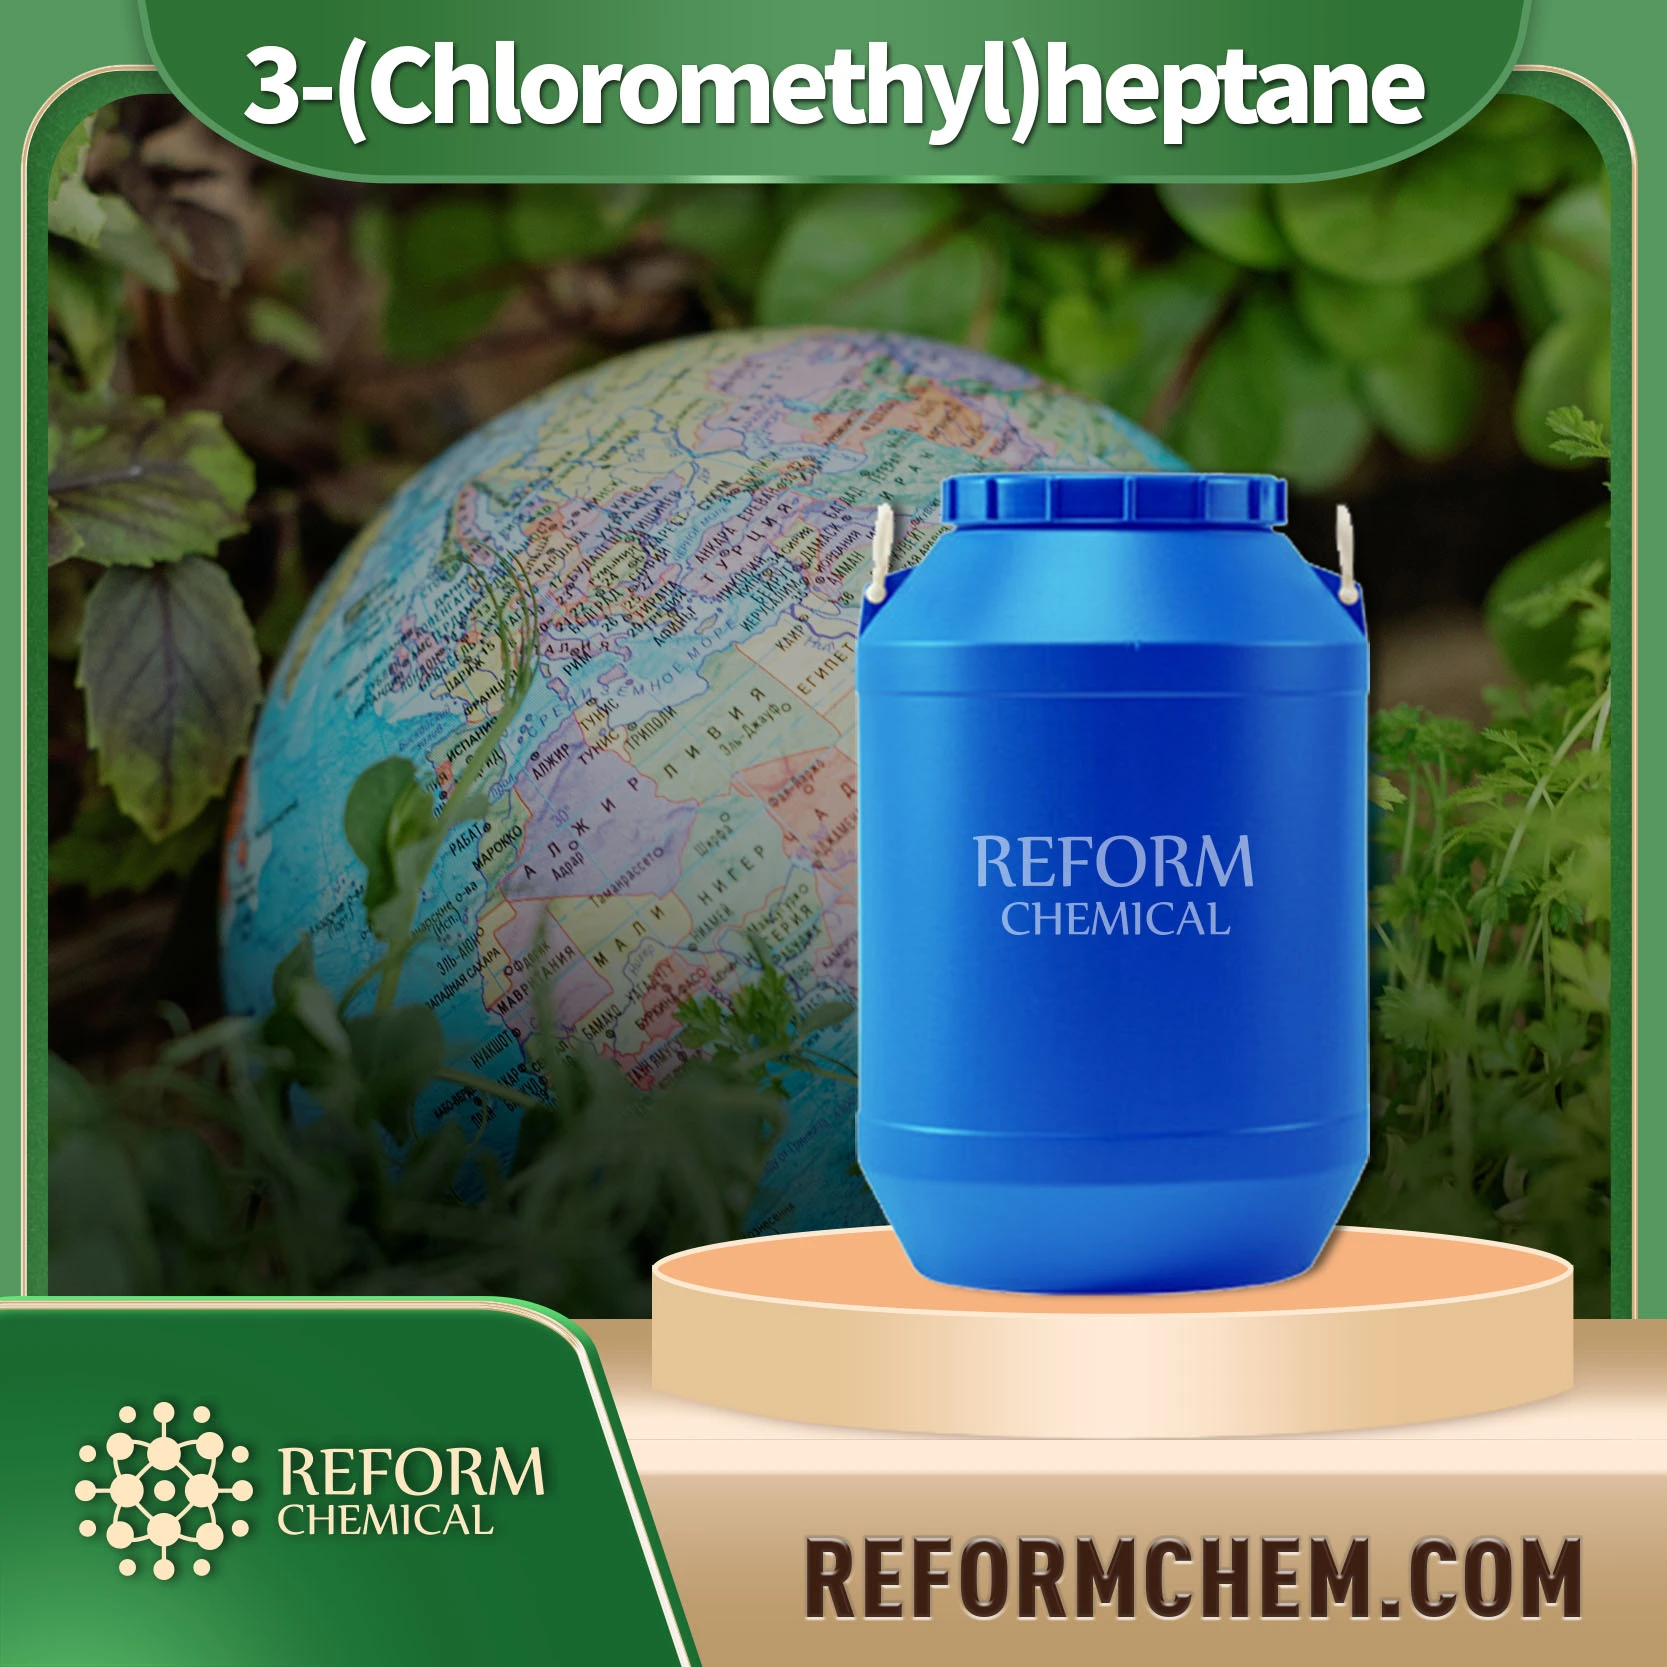 3-(Chloromethyl)heptane